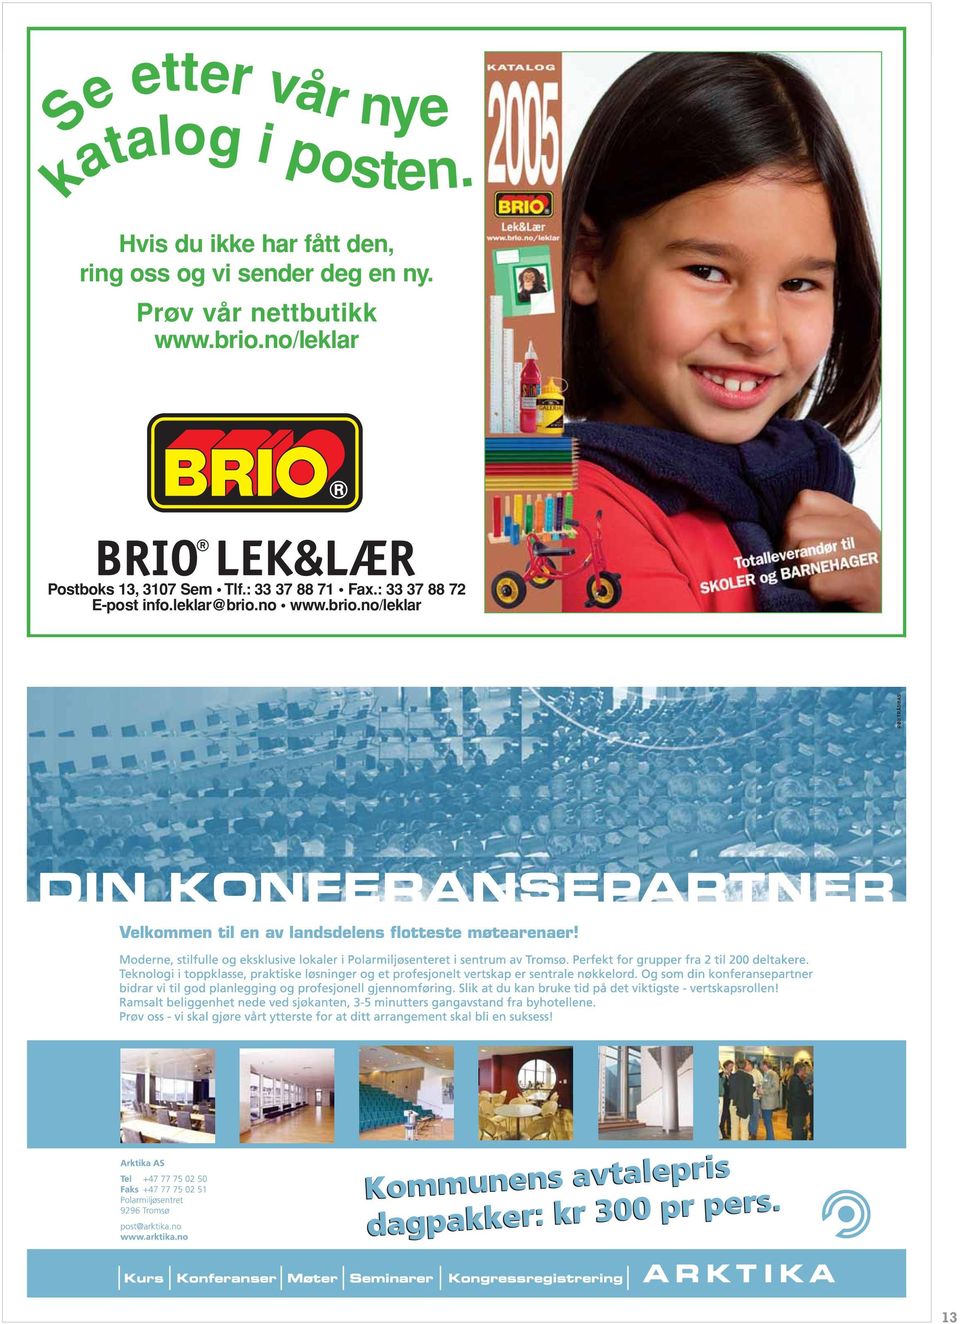 Prøv vår nettbutikk www.brio.